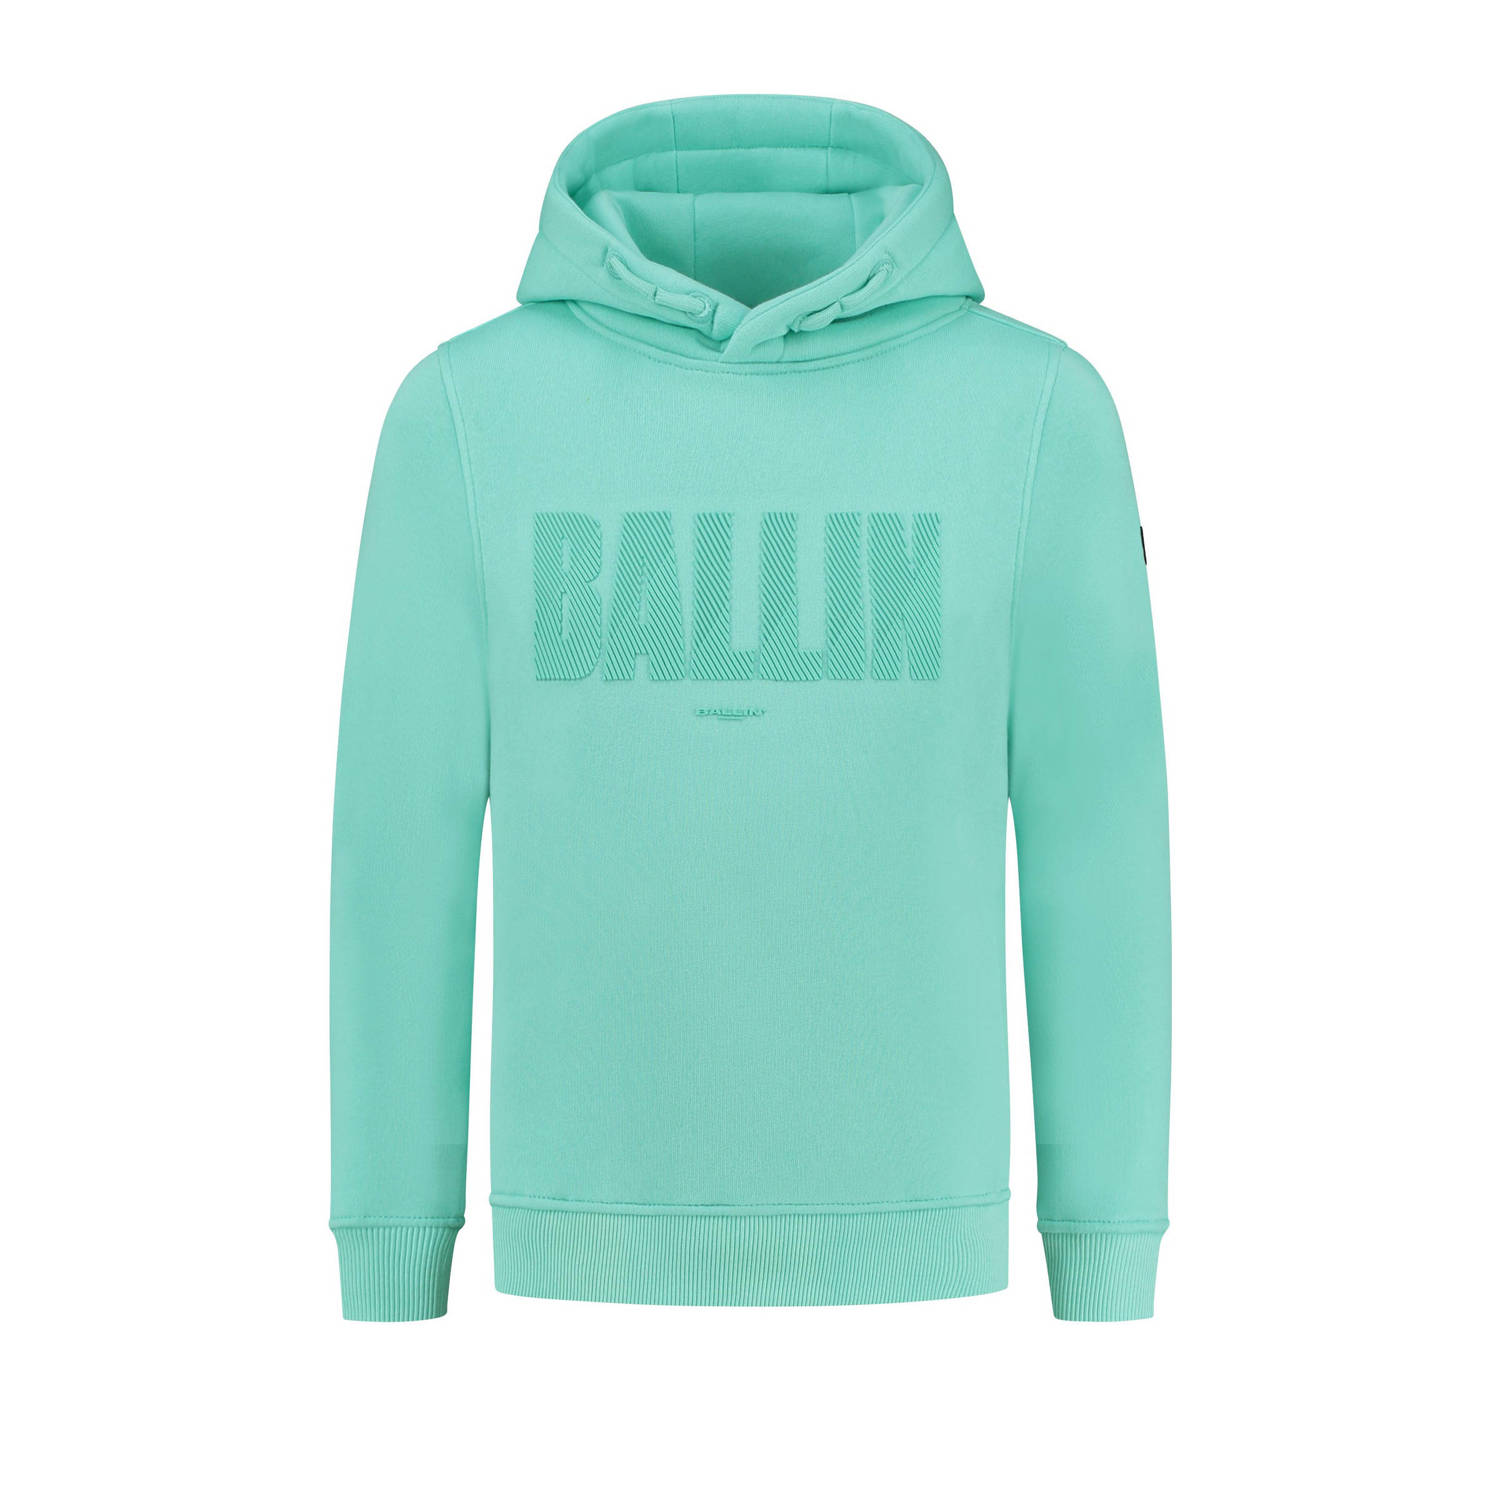 Ballin hoodie met tekst lichtblauw